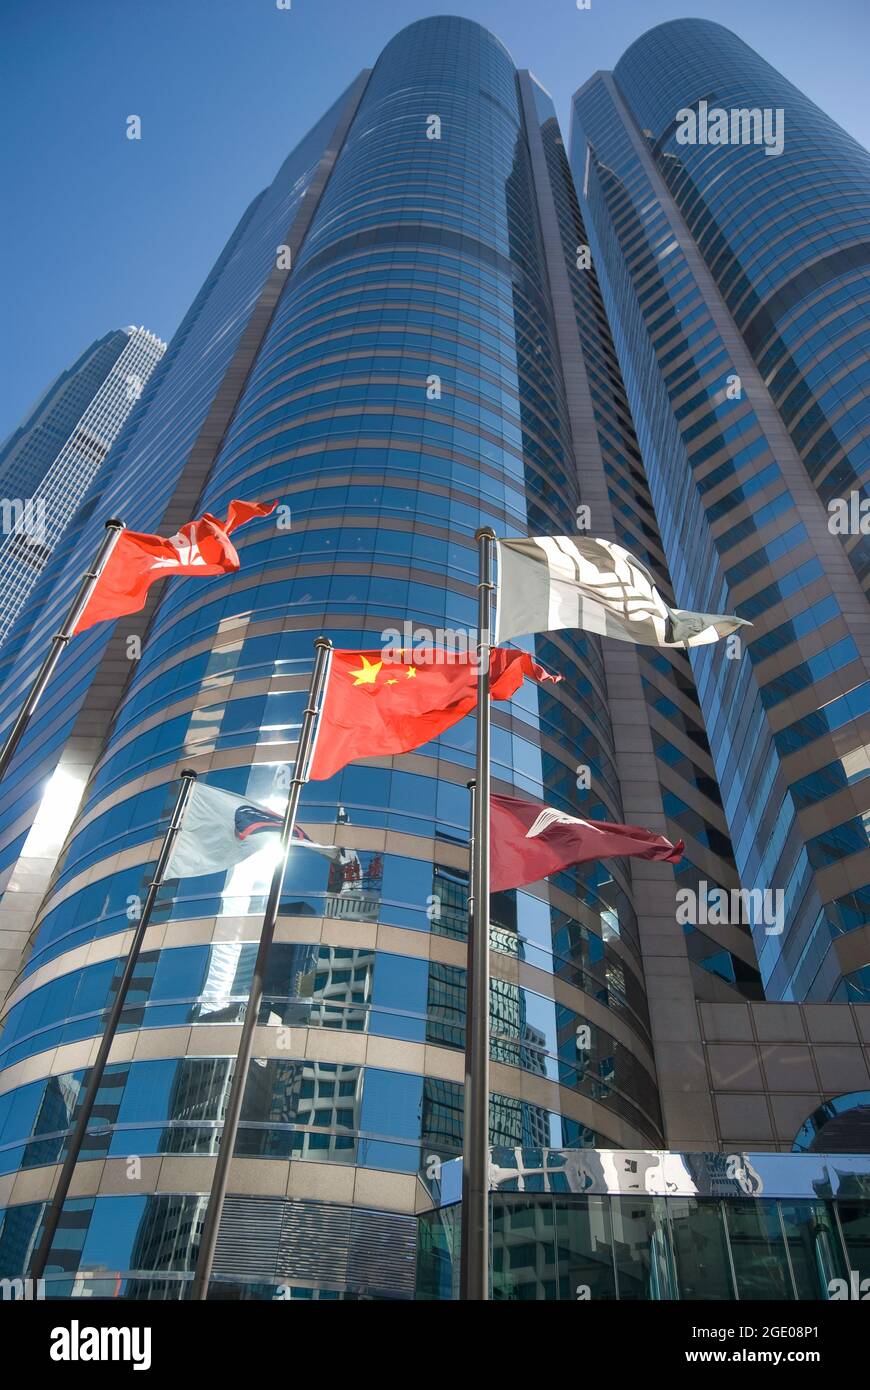 Bâtiments en hauteur affichant le drapeau chinois, Exchange Square, Sheung WAN, Victoria Harbour, Hong Kong Island, Hong Kong, République populaire de Chine Banque D'Images